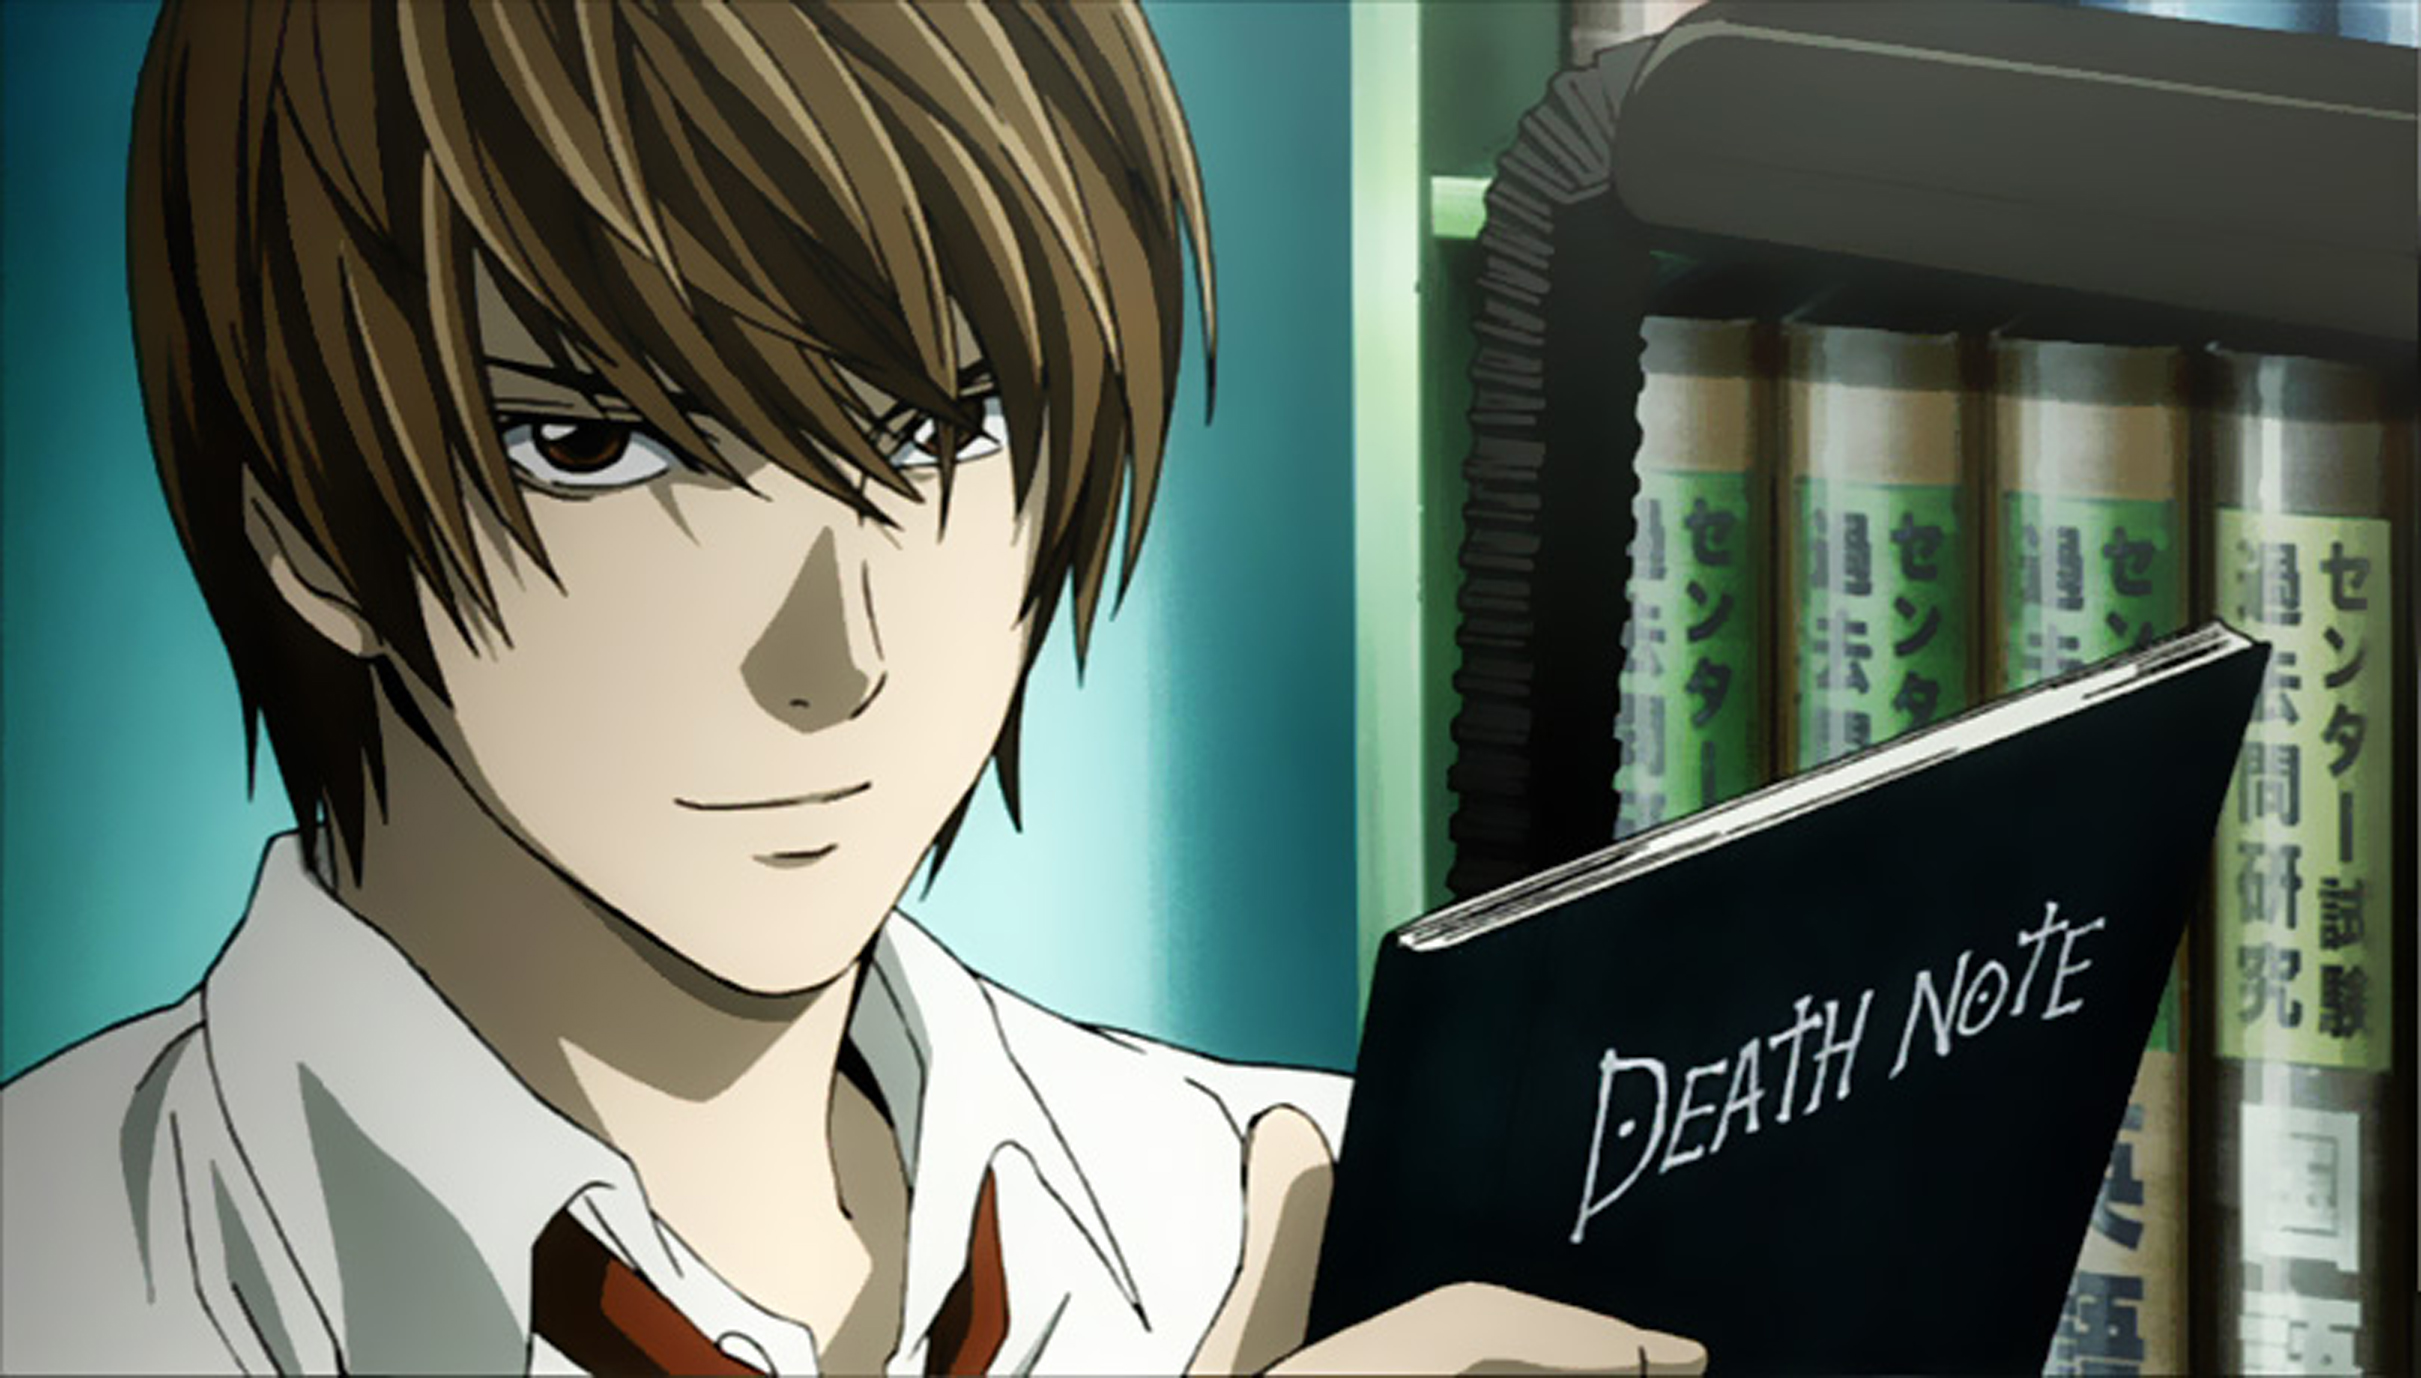 Résultat de recherche d'images pour "anime death note"